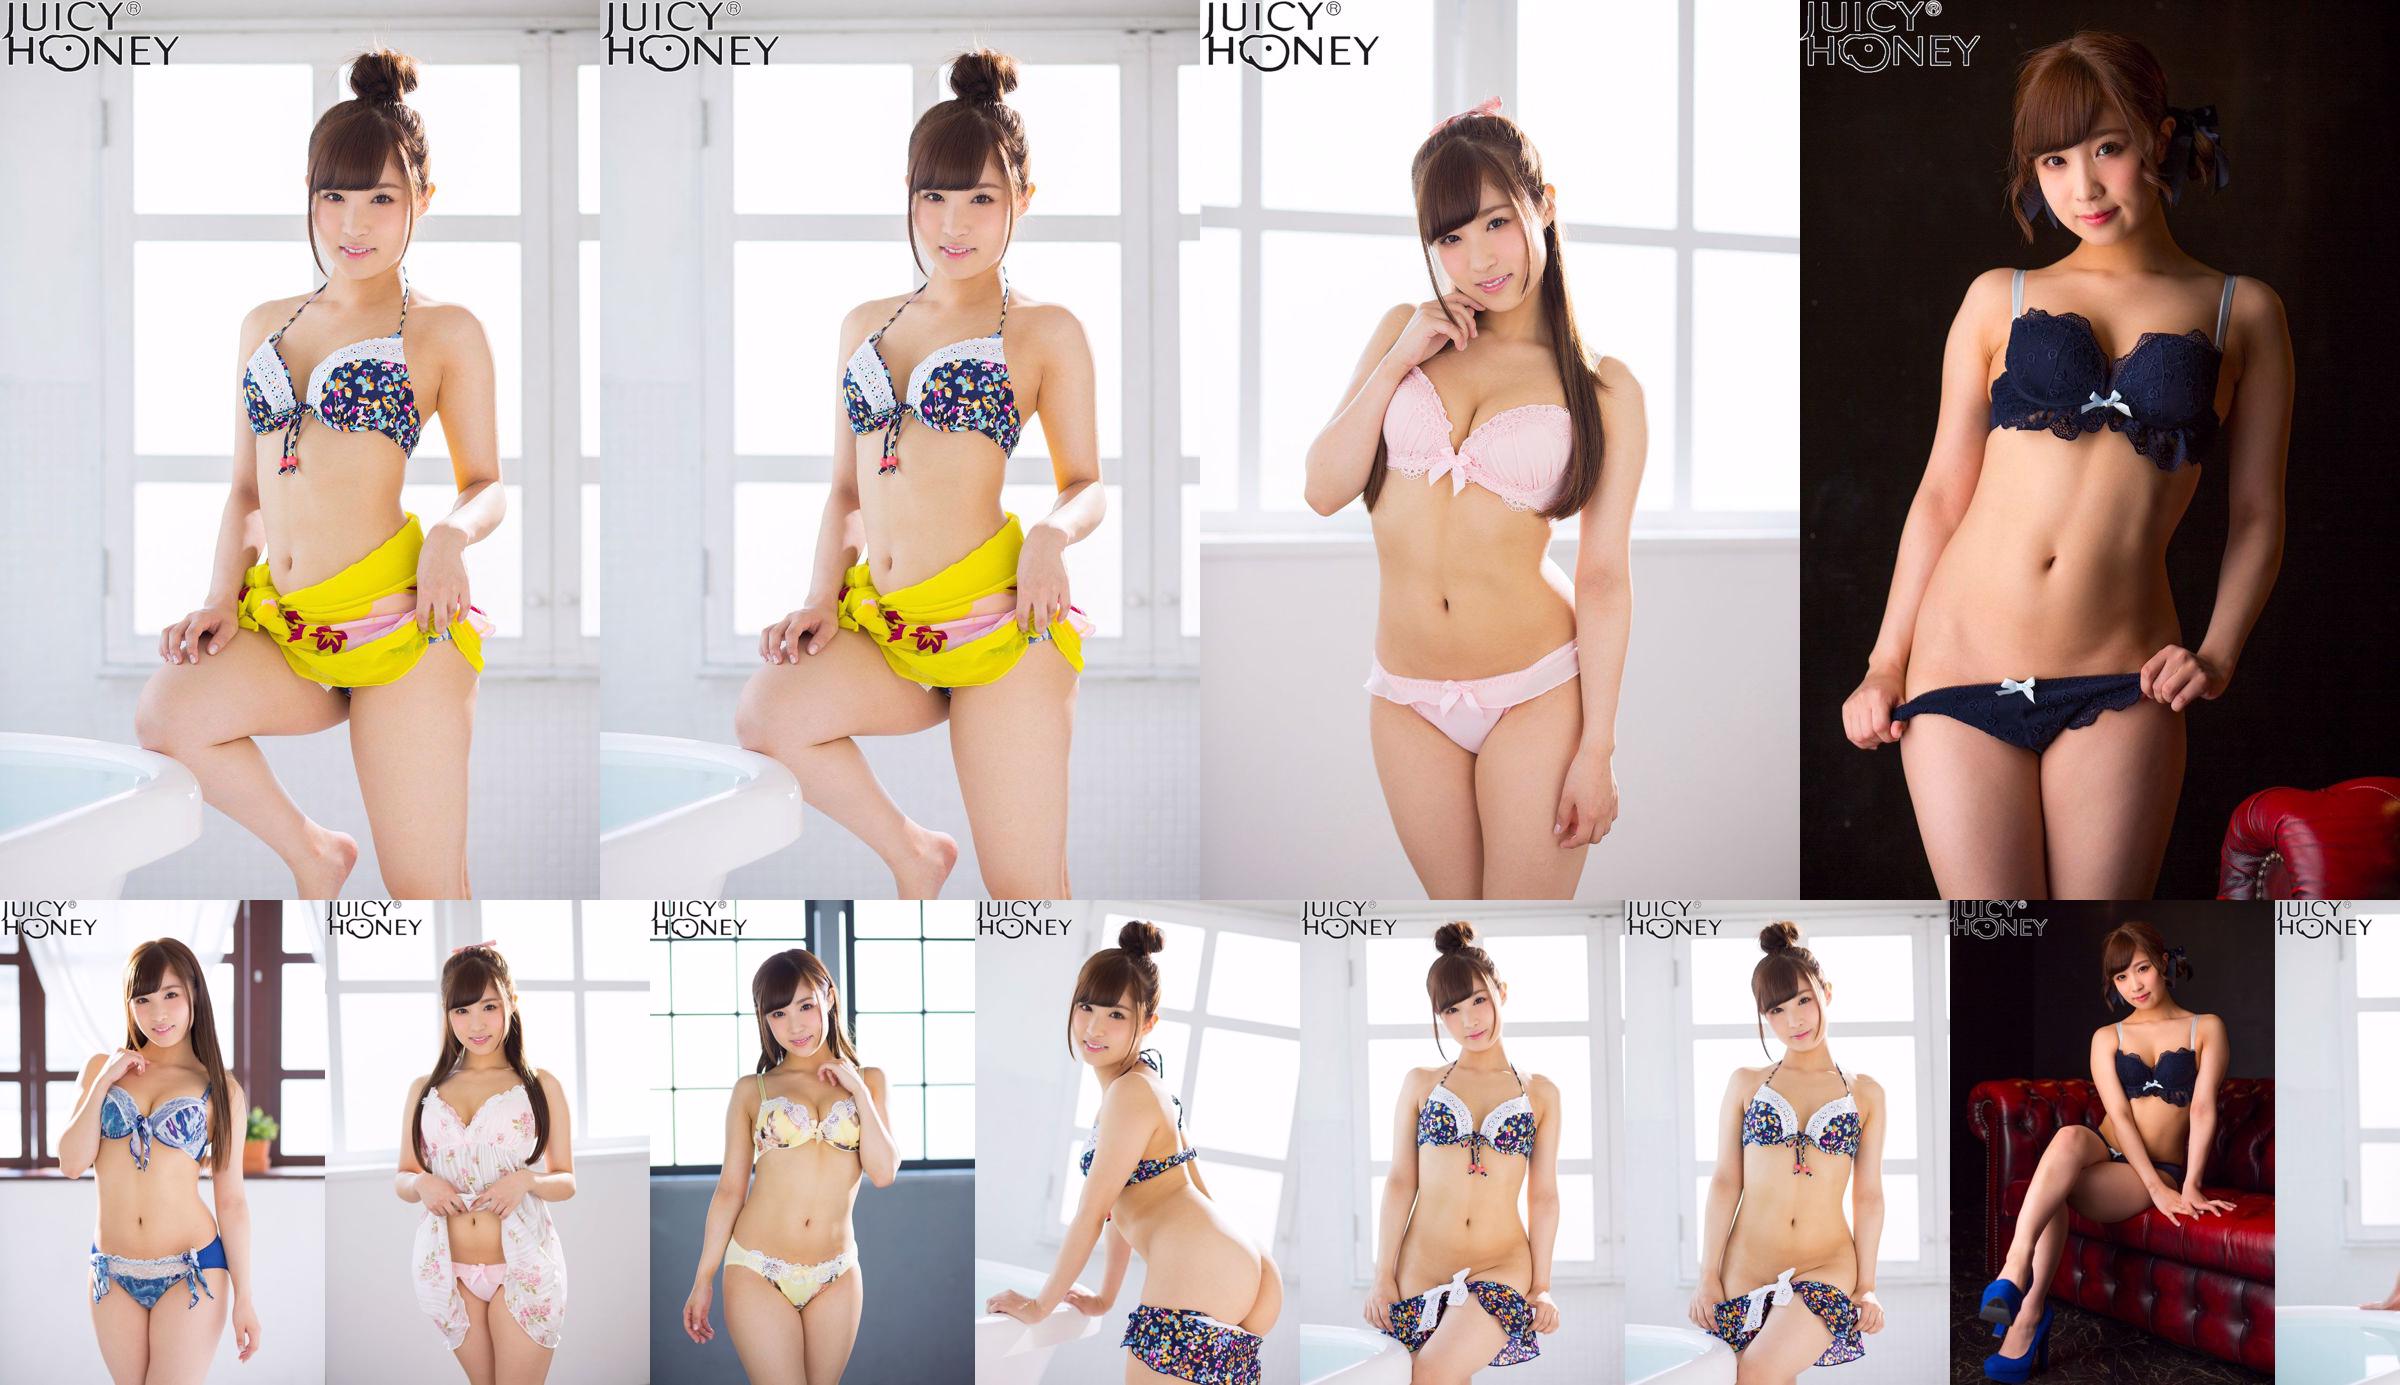 [X-City] Juicy Honey jh220 Noa Eikawa Noa Eikawa / Noa Eikawa No.2dea07 Page 1